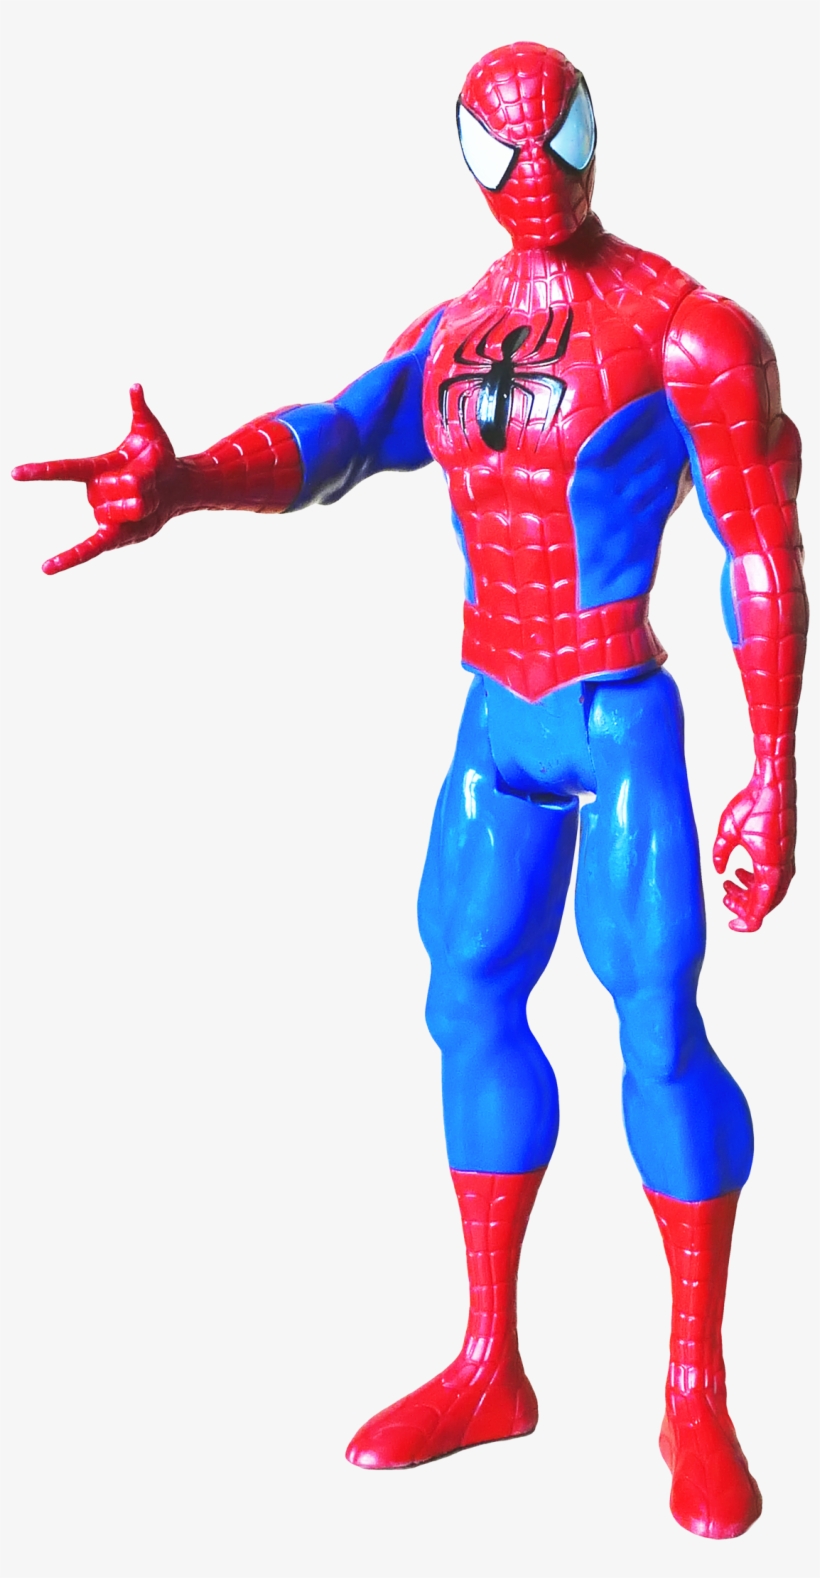 Spider Man Png Transparent Image - Spiderman Png Toy, transparent png #611322